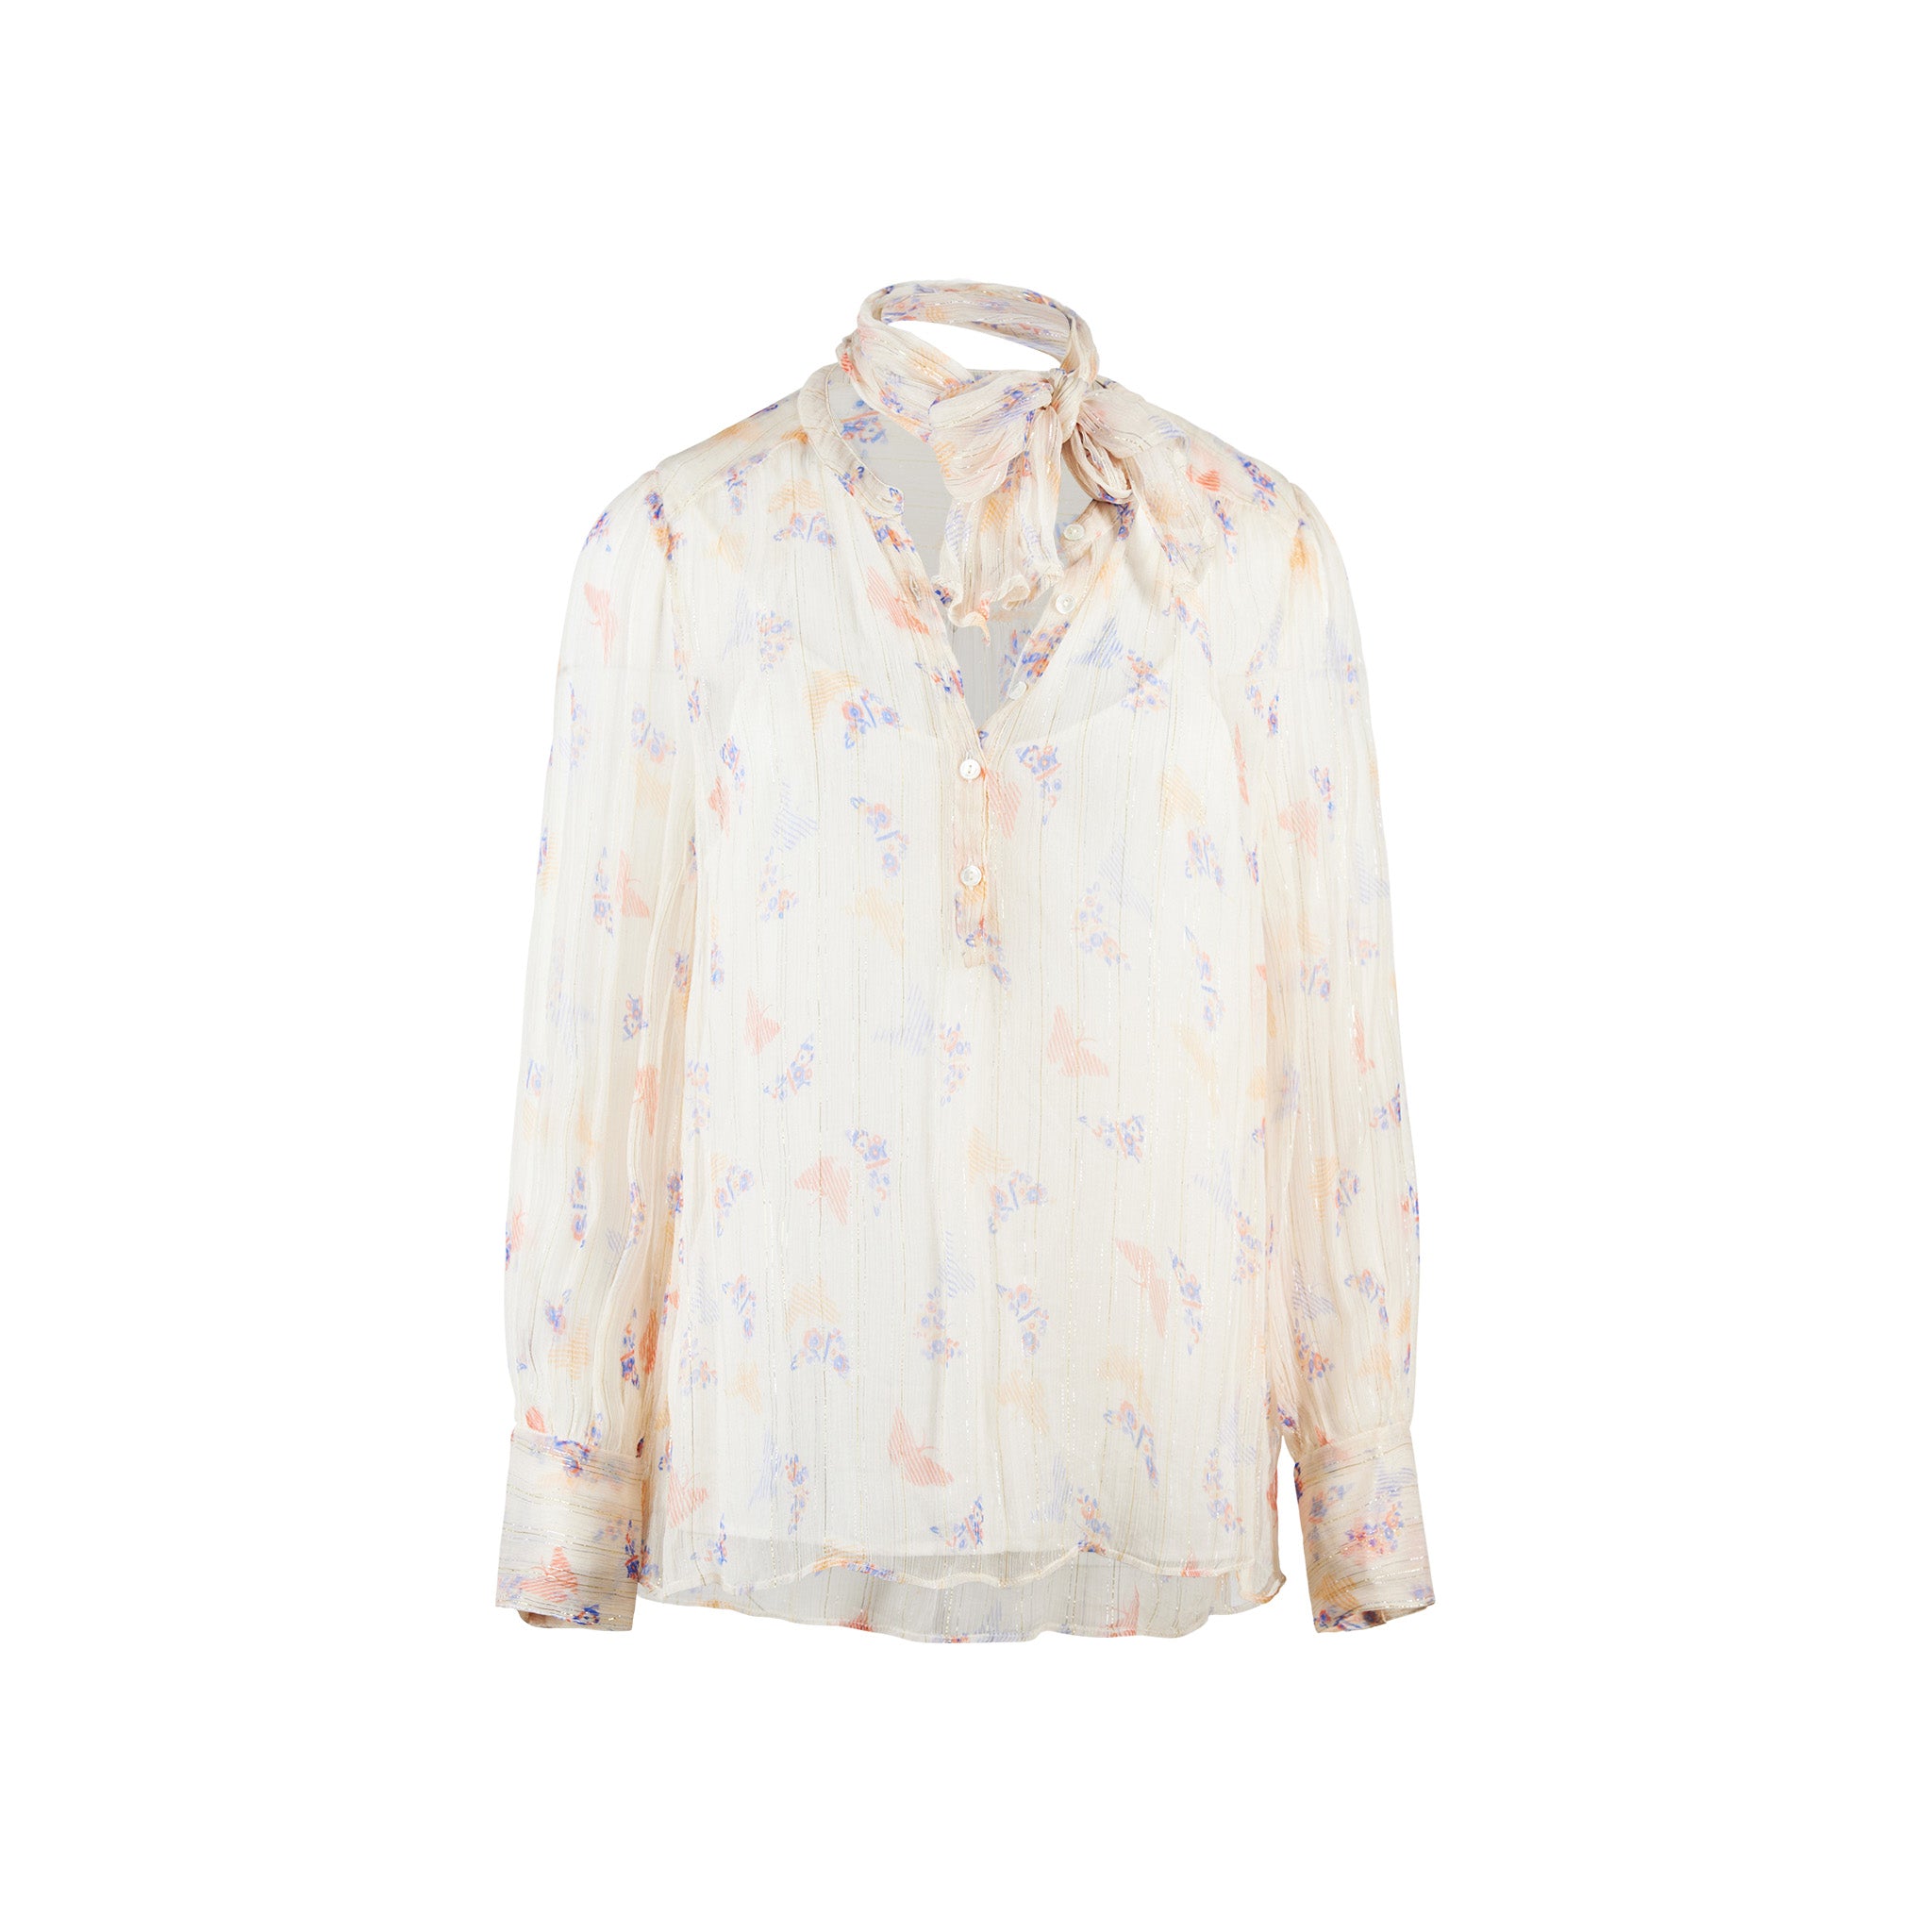 Amelie blouse in Mica print / ecru